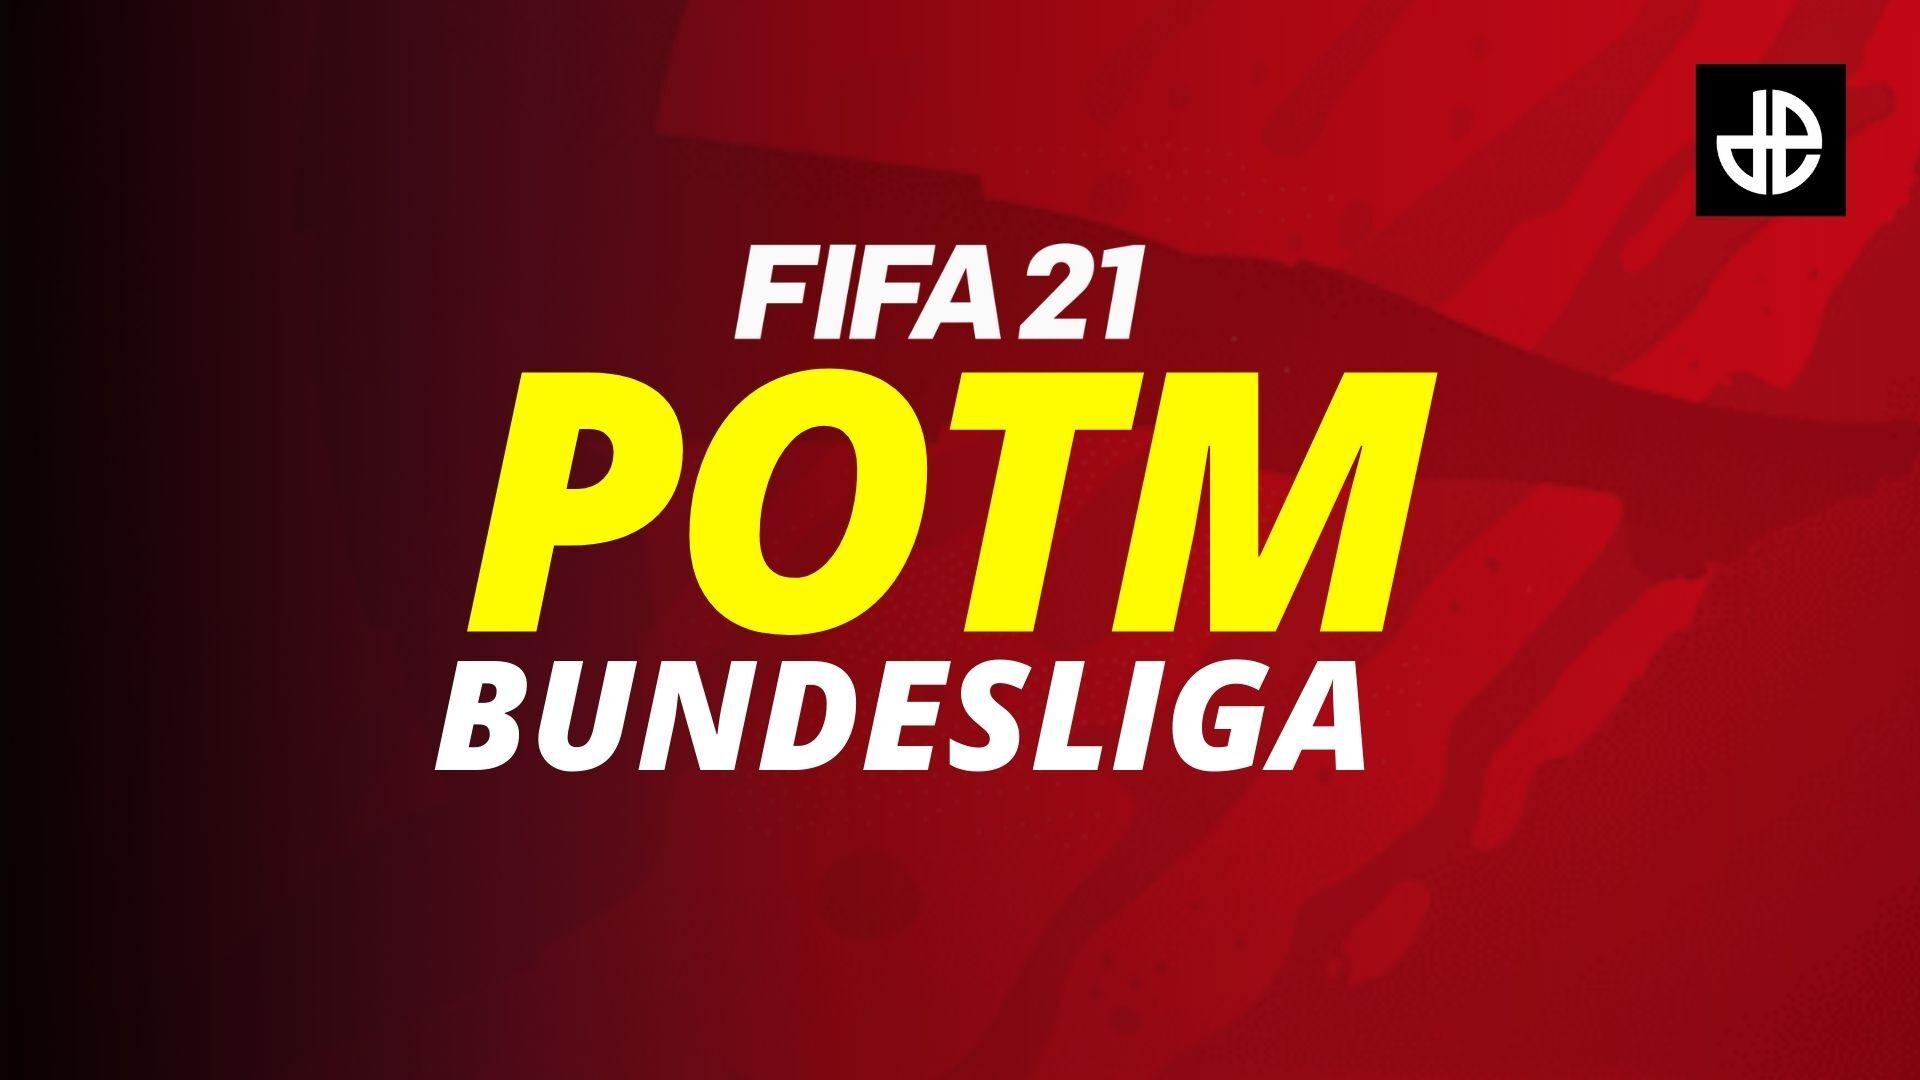 Bundesliga POTM in FIFA 21